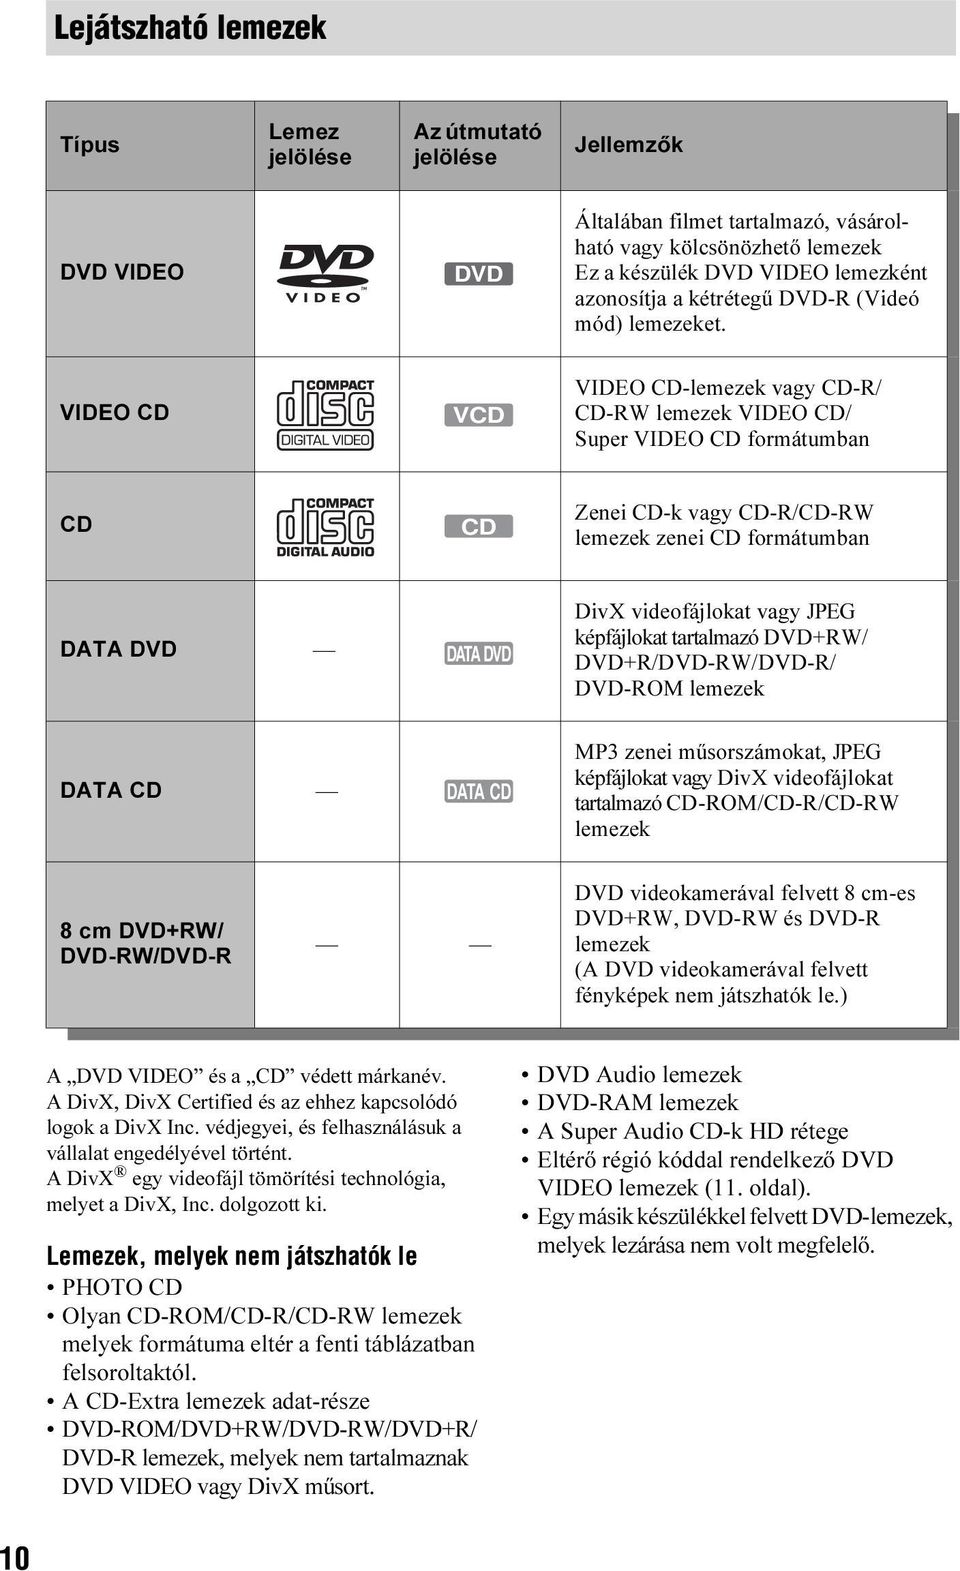 VIDEO CD VCD VIDEO CD-lemezek vagy CD-R/ CD-RW lemezek VIDEO CD/ Super VIDEO CD formátumban CD CD Zenei CD-k vagy CD-R/CD-RW lemezek zenei CD formátumban DATA DVD DATA DVD DivX videofájlokat vagy